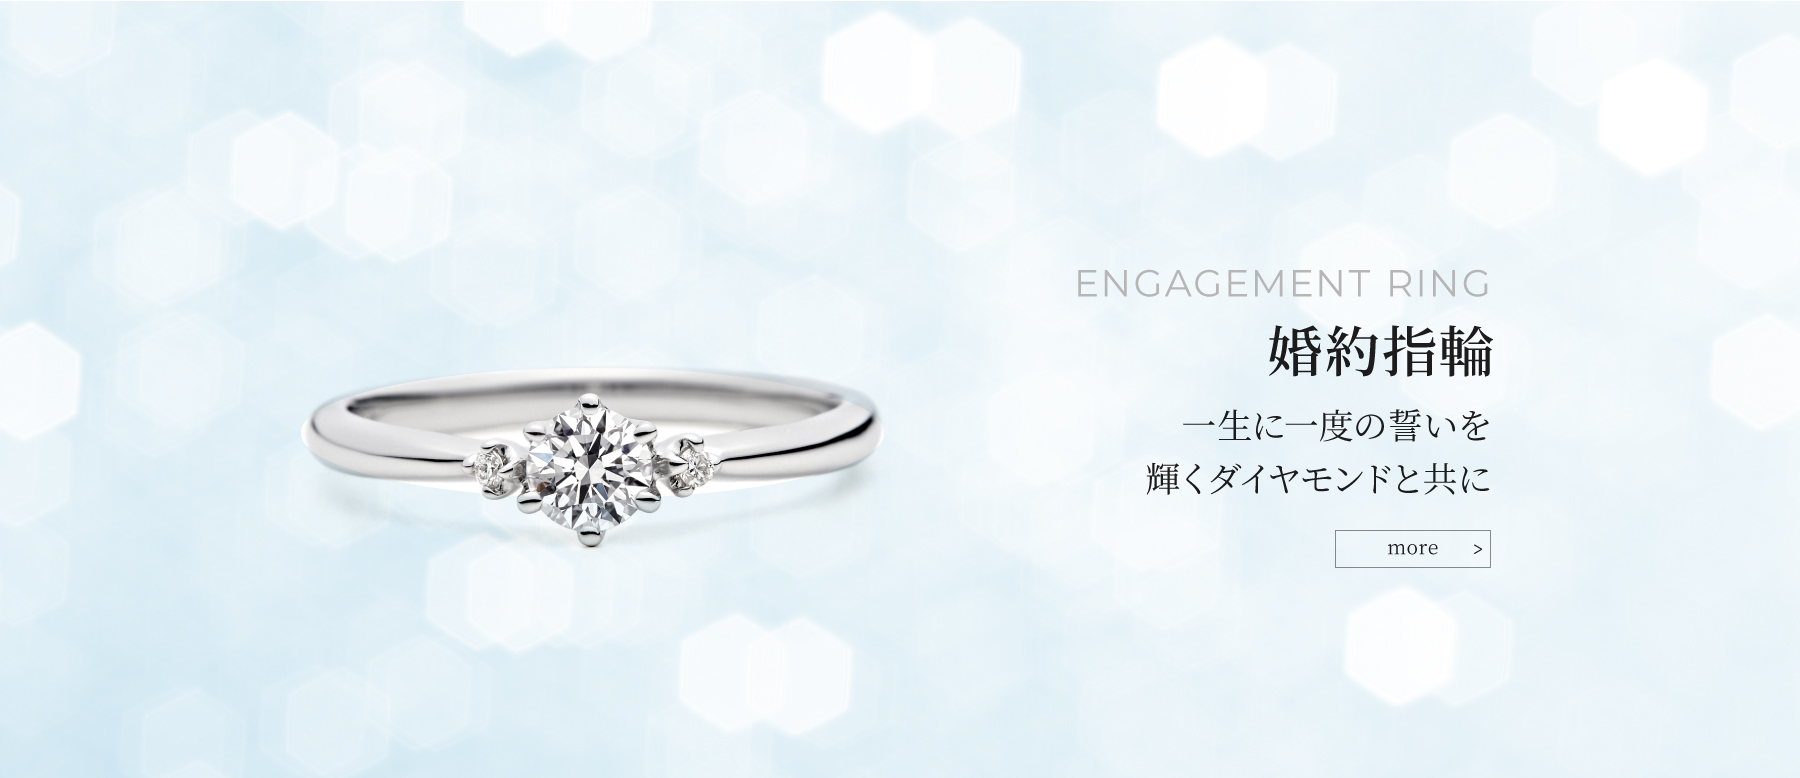 ENGAGEMENT RING 婚約指輪 一生に一度の誓いを輝くダイヤモンドと共に